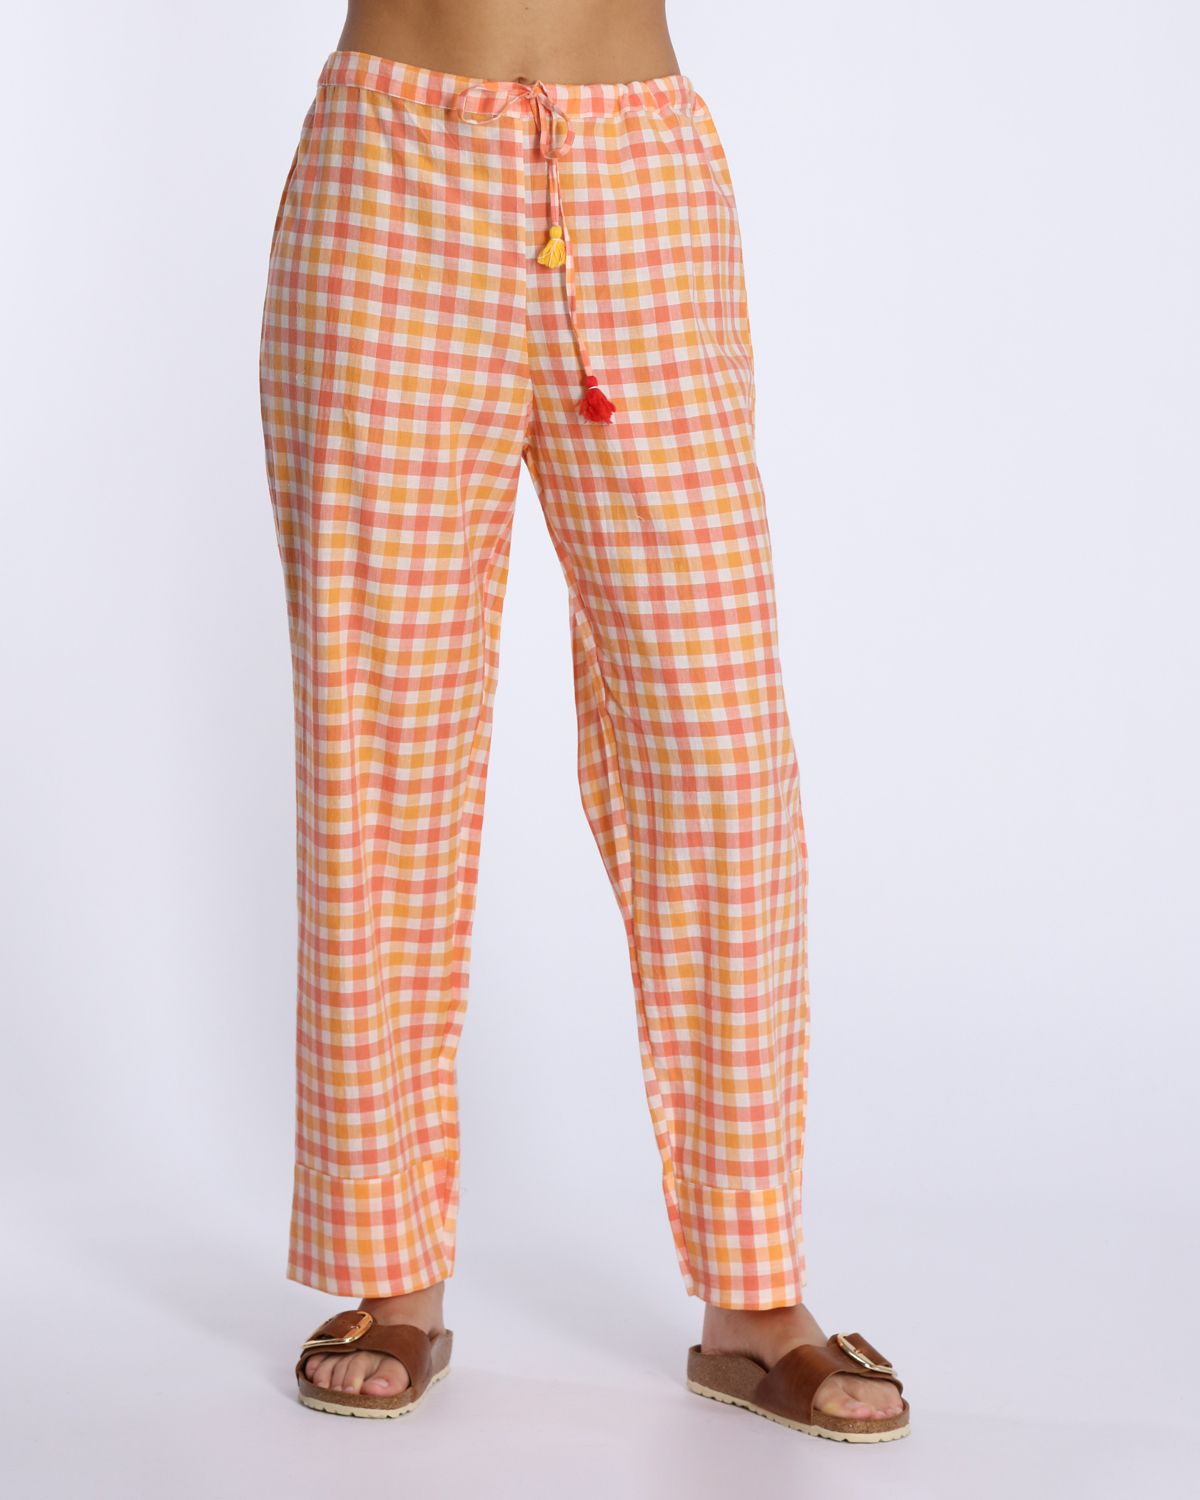 Pantalone in cotone quadretti arancio